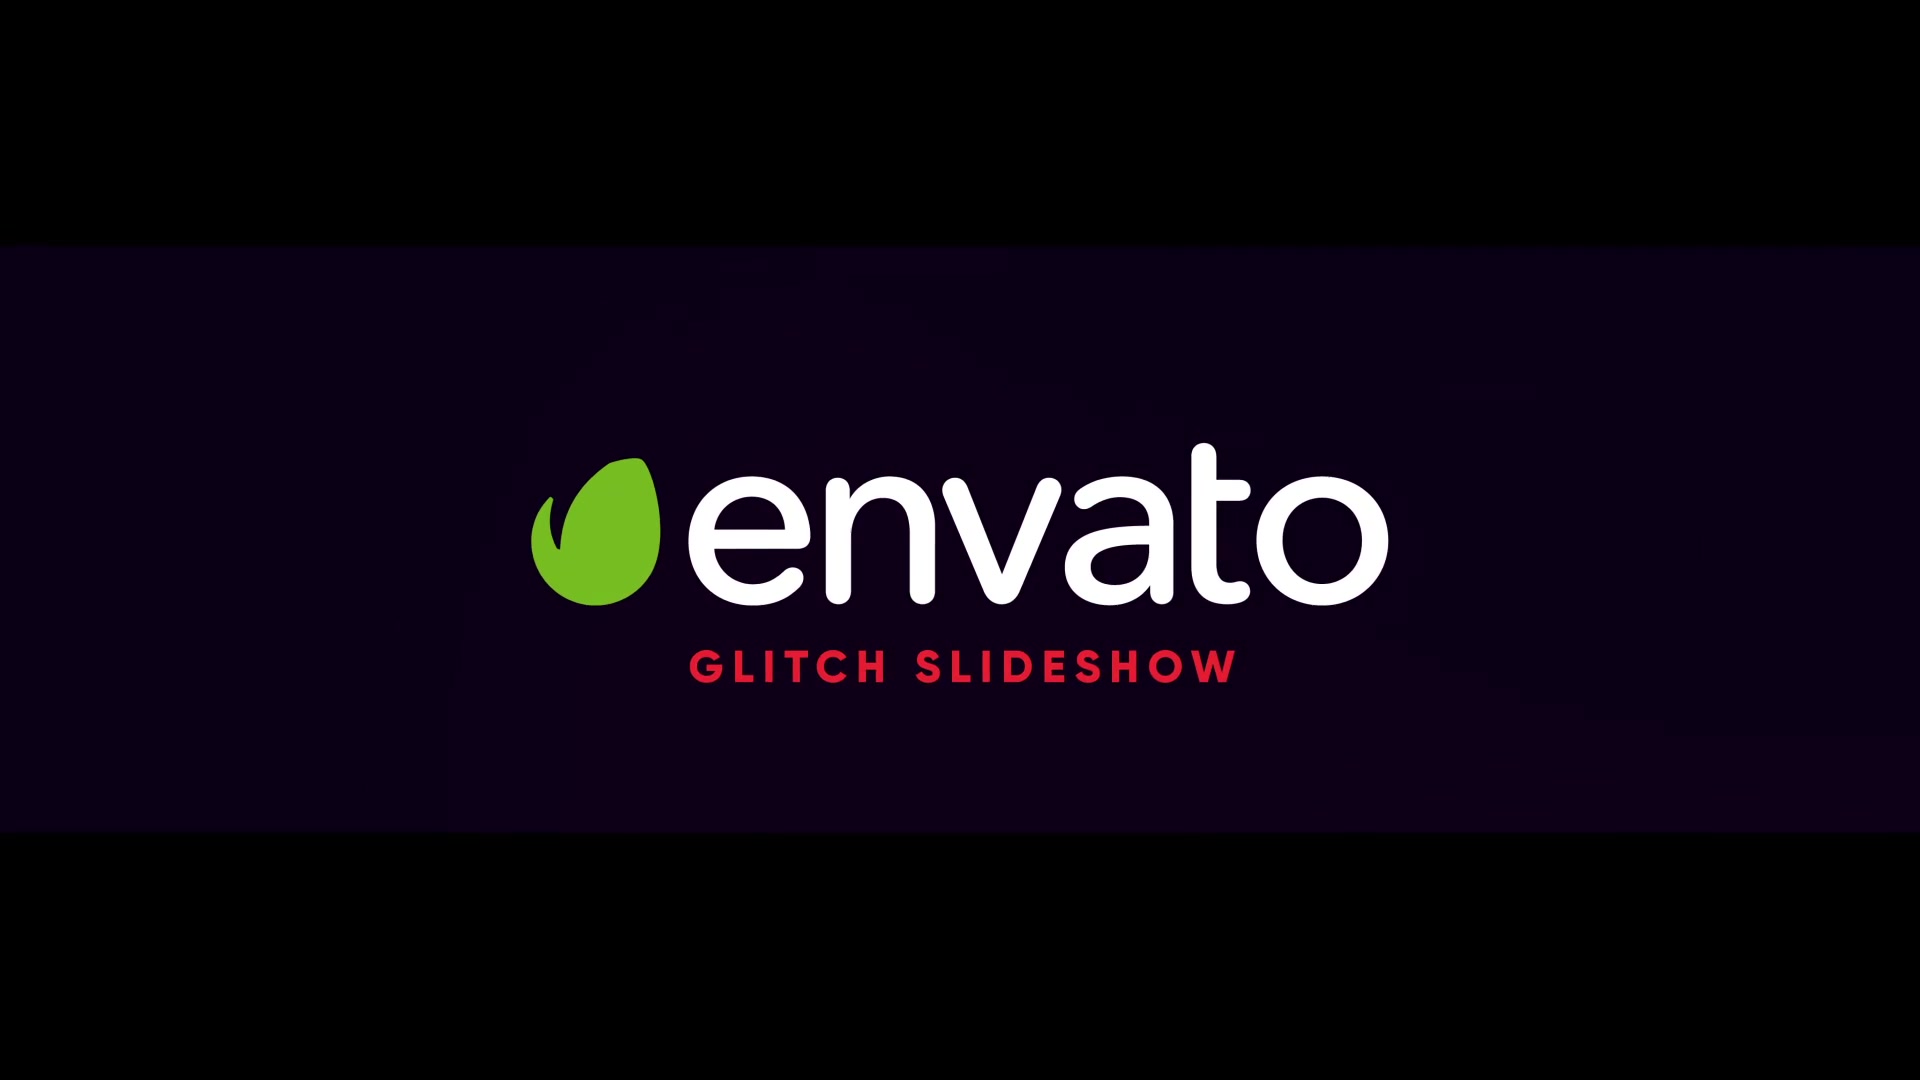 Glitch Slideshow Videohive 35712254 Premiere Pro Image 7